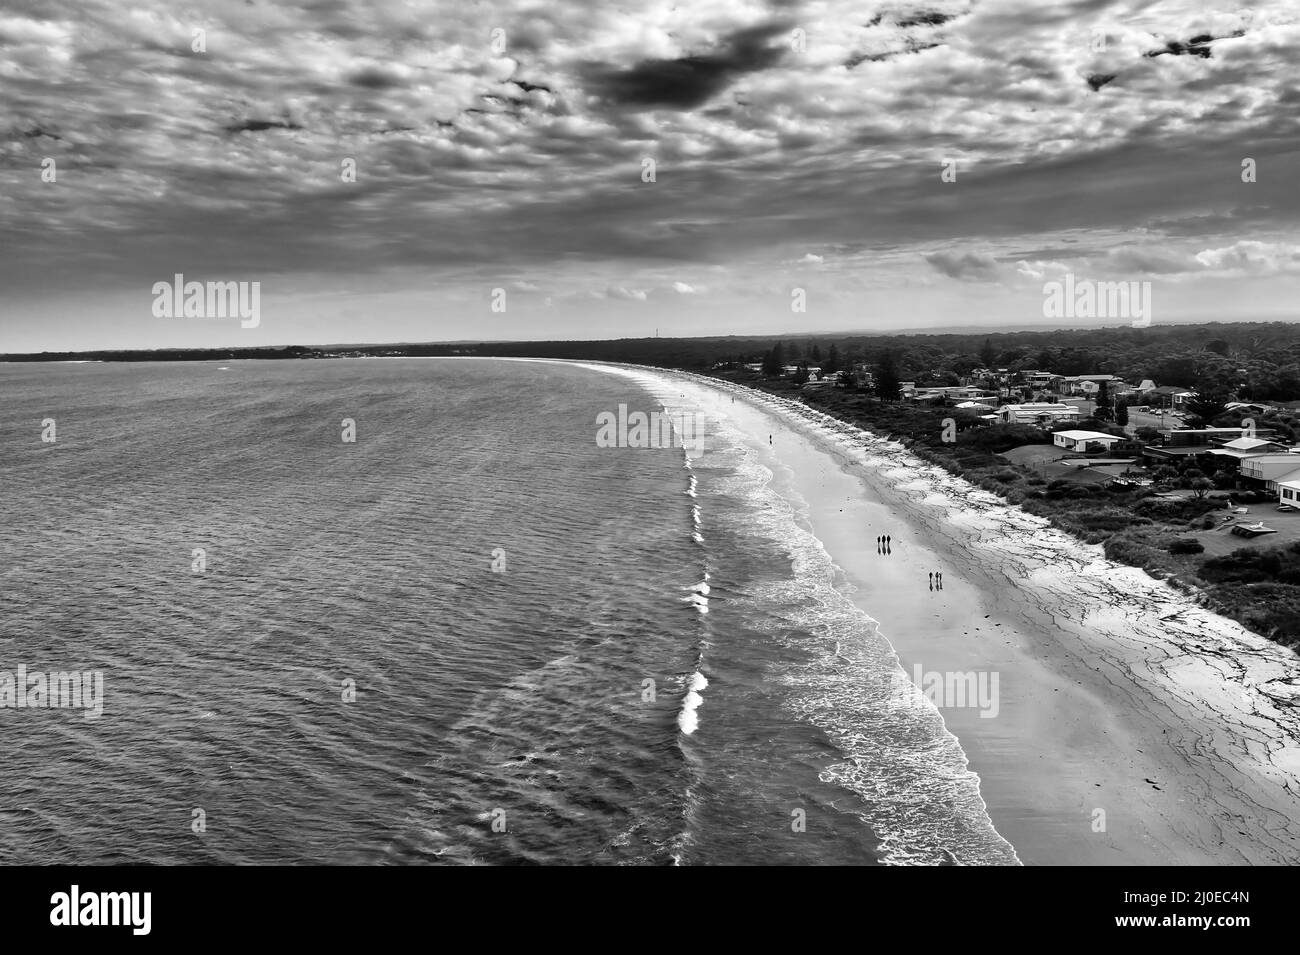 Moody schwarz weiß Blick auf lange stürmische Callala Strand und Stadt Waterfront an Jervis Bucht der australischen pazifikküste. Stockfoto